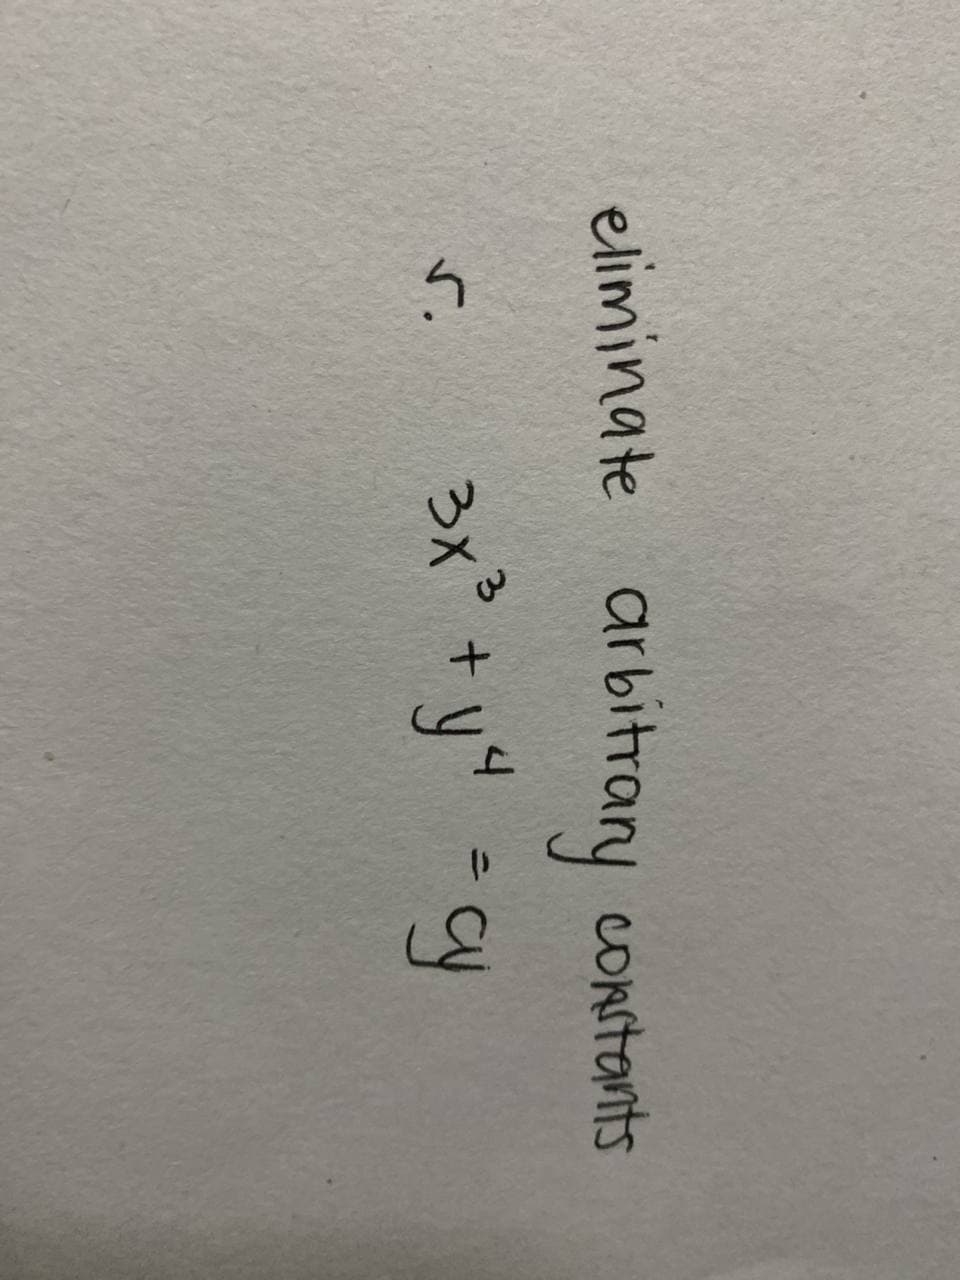 eliminate arbitrary constants
3x³ + y ²4 = cy
r.